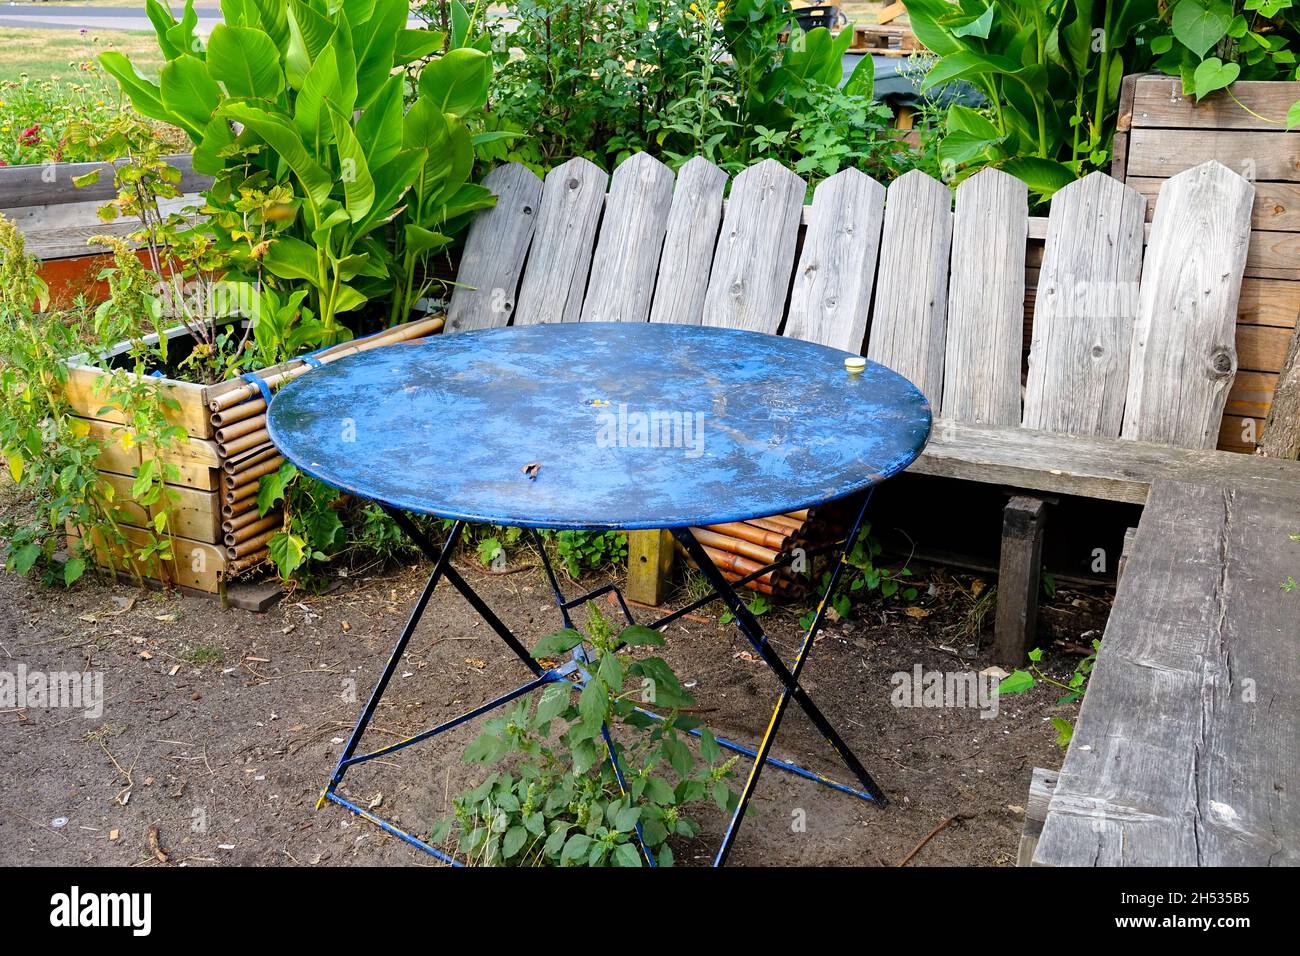 Sedile giardino insolita vecchia seduta in legno con un tavolo in metallo in un giardino di assegnazione Foto Stock